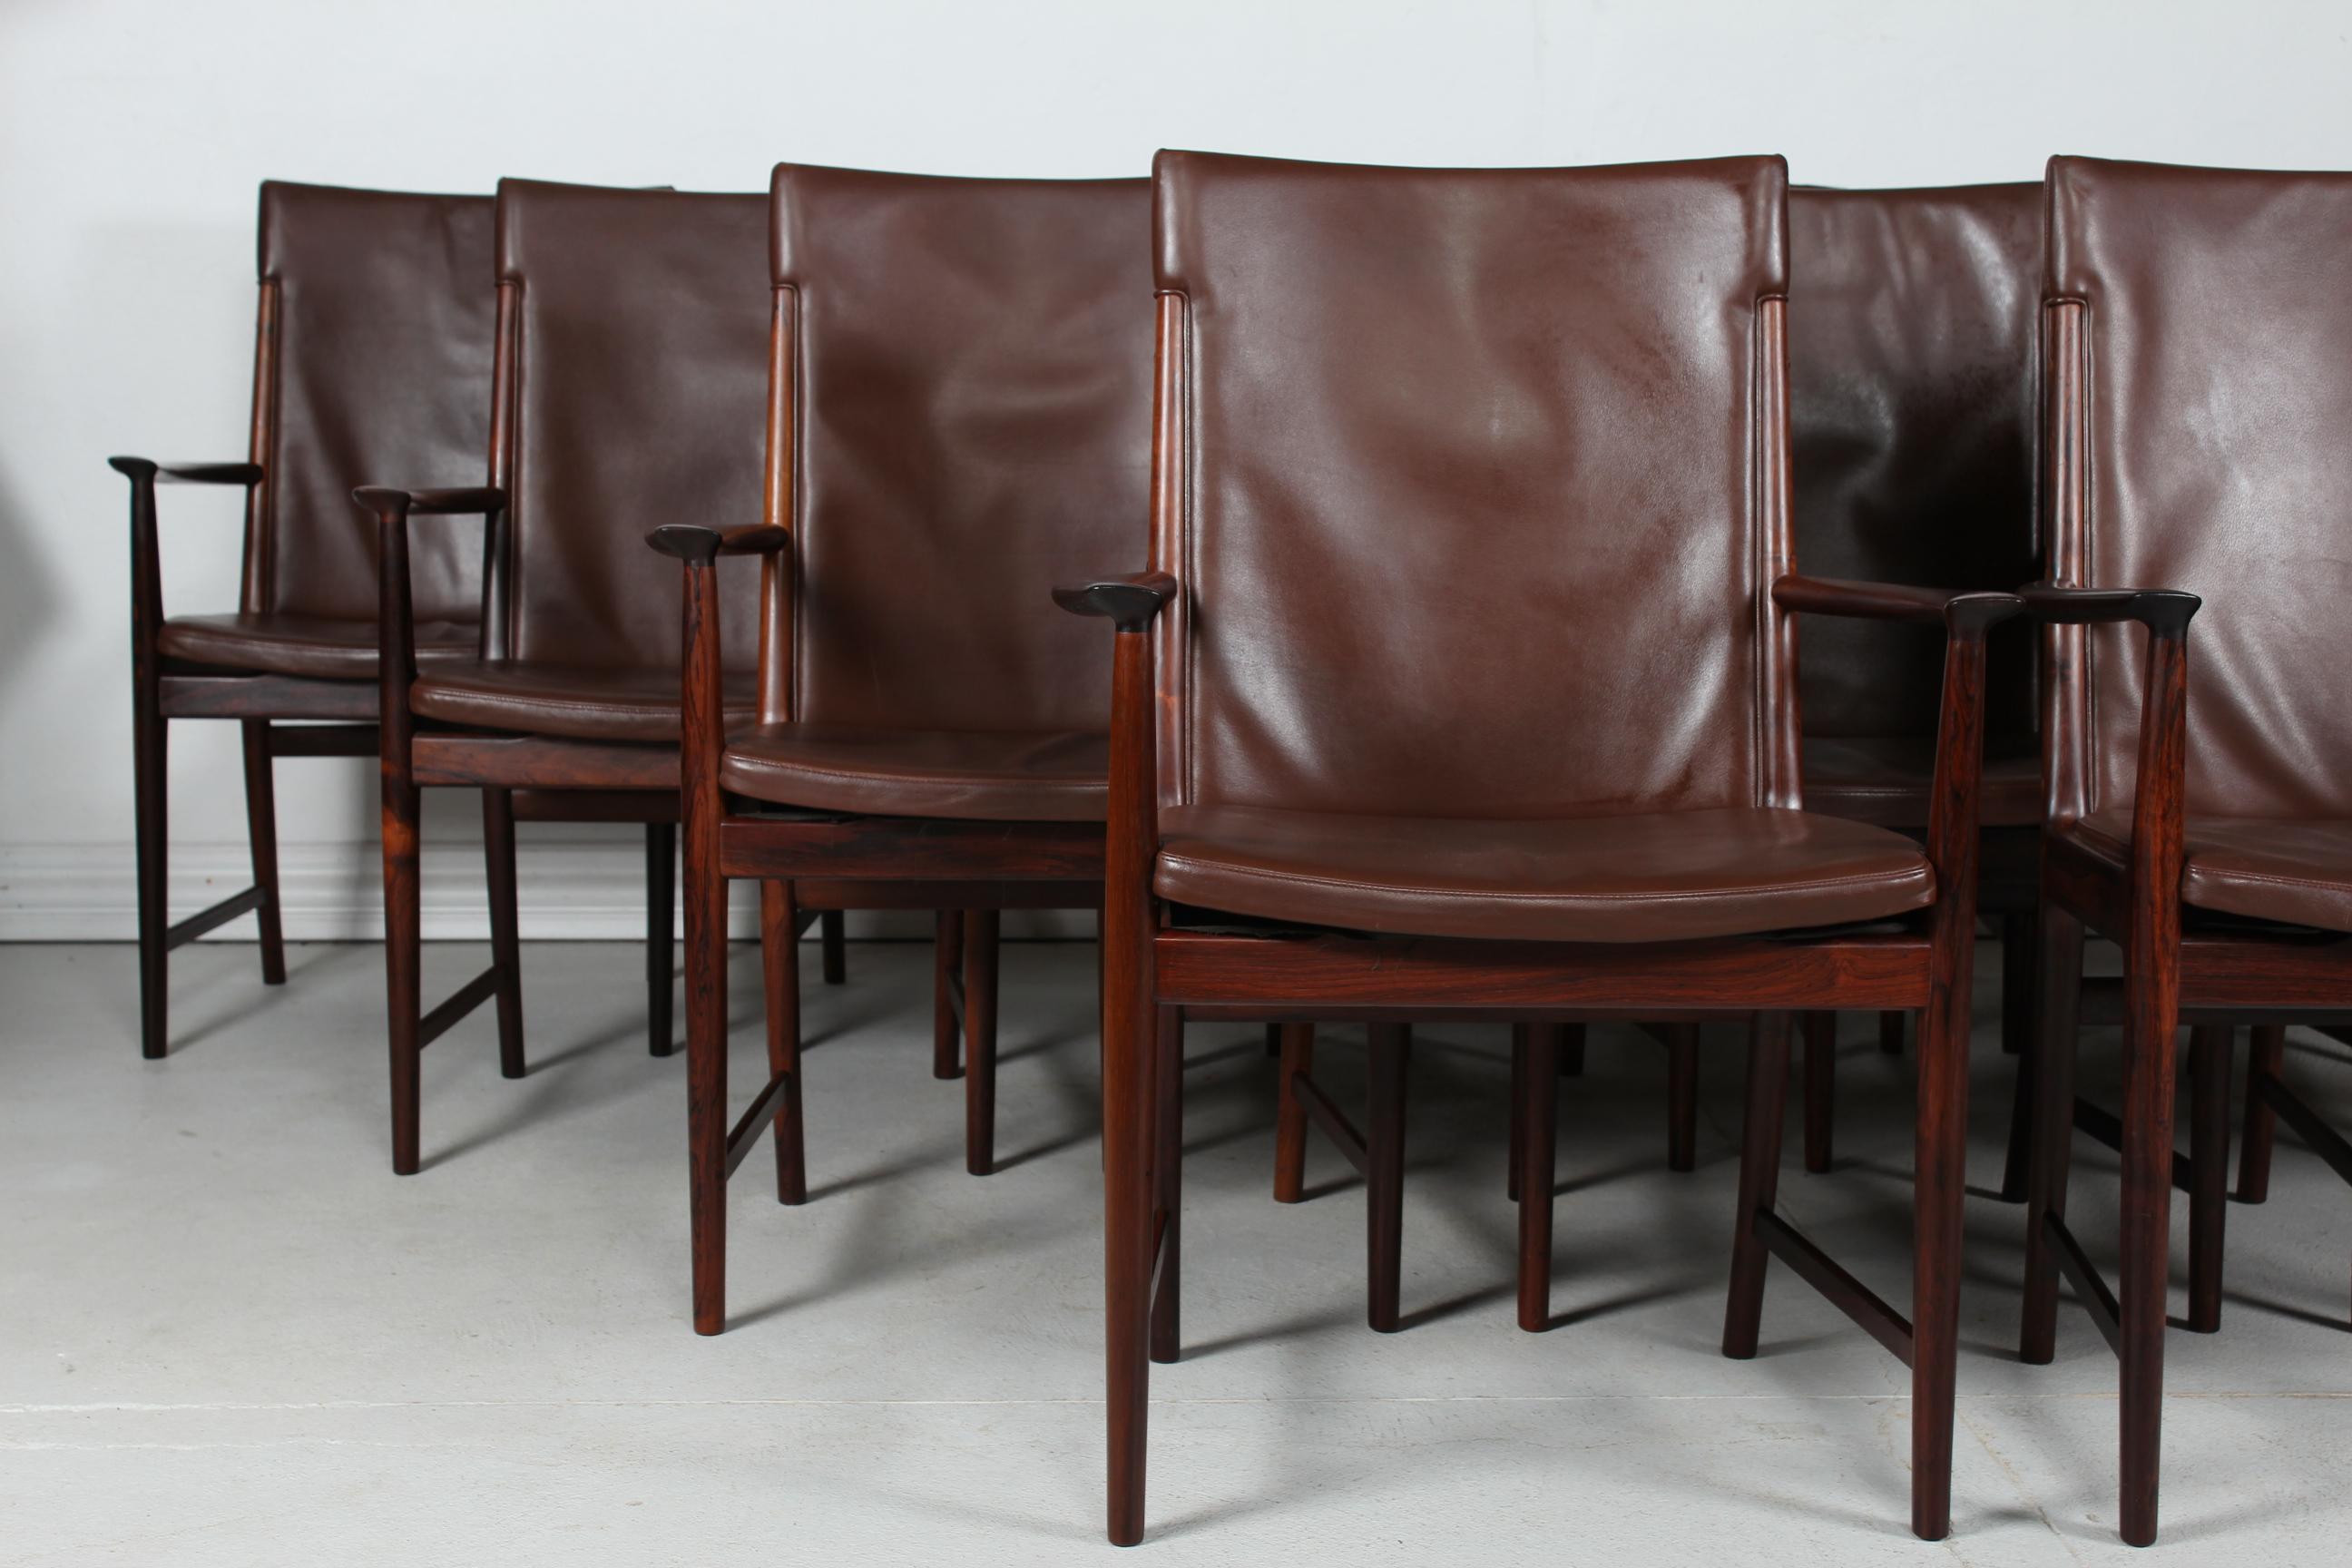 Hier ist ein seltenes Set von 14 hohen Konferenzstühlen aus den 1960er Jahren, entworfen von dem dänischen Möbeldesigner Kai Lyngfeldt Larsen.
Sie sind aus Palisanderholz mit dunkelbrauner Lederpolsterung gefertigt
in Dänemark durch den